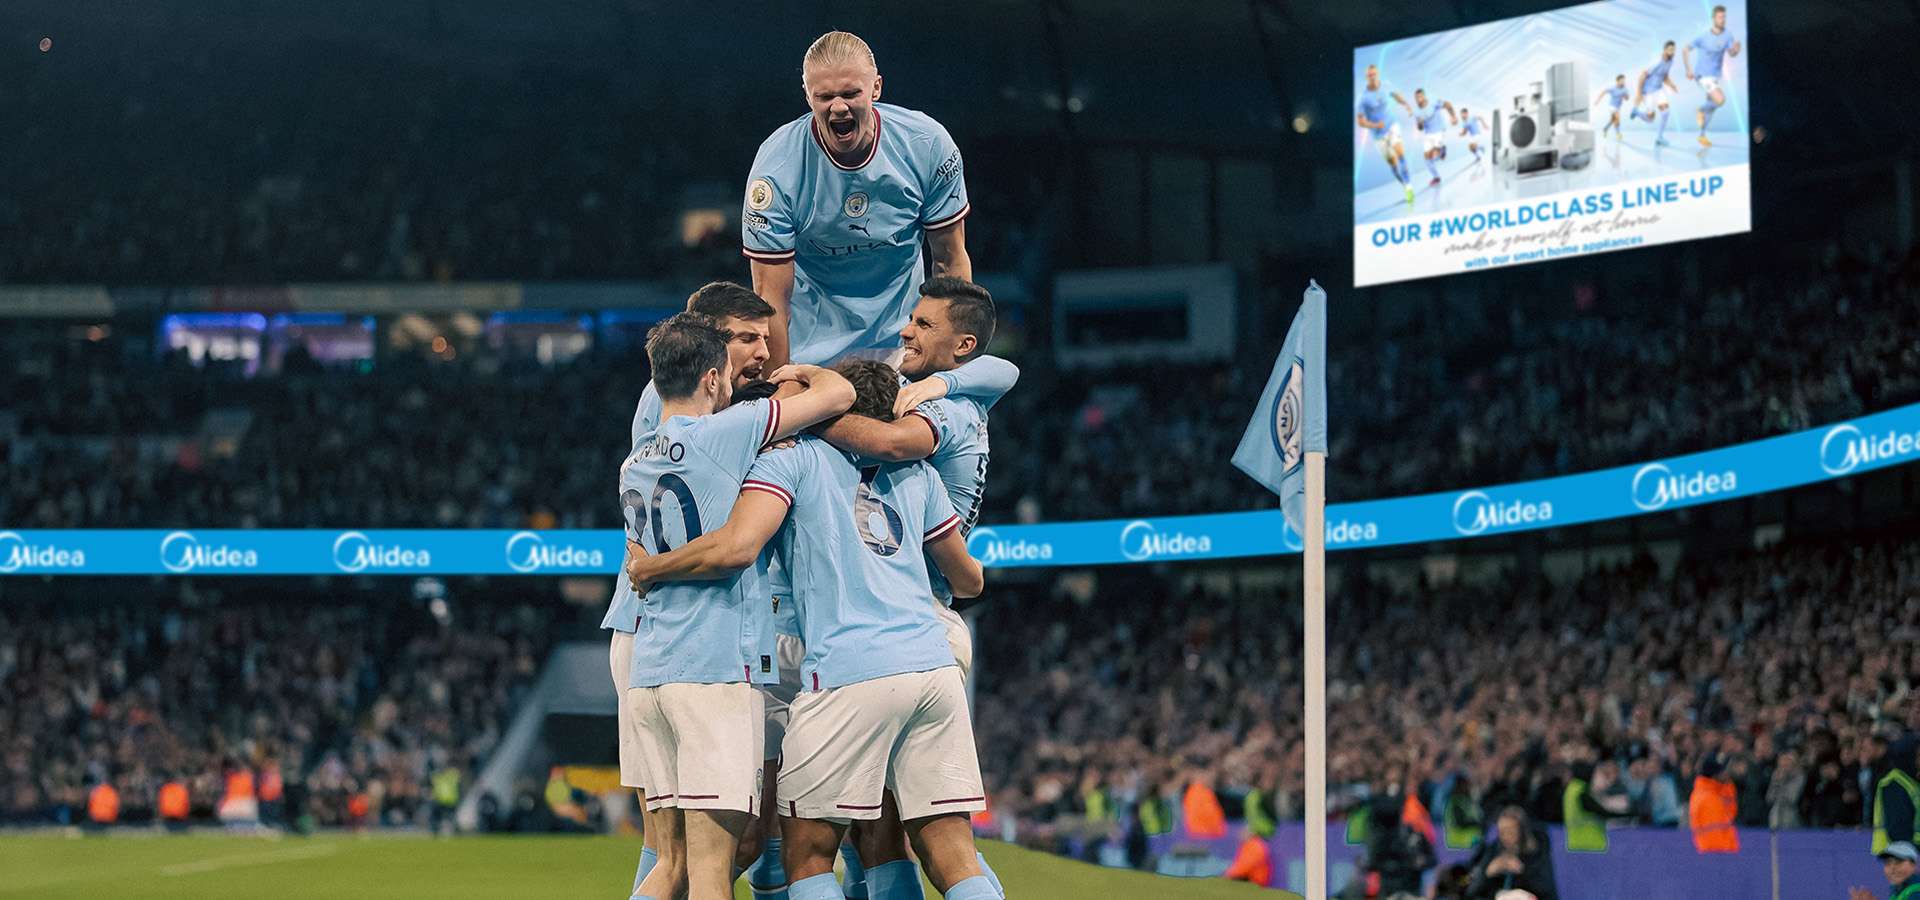 Midea e il Manchester City estendono la loro Parternship globale